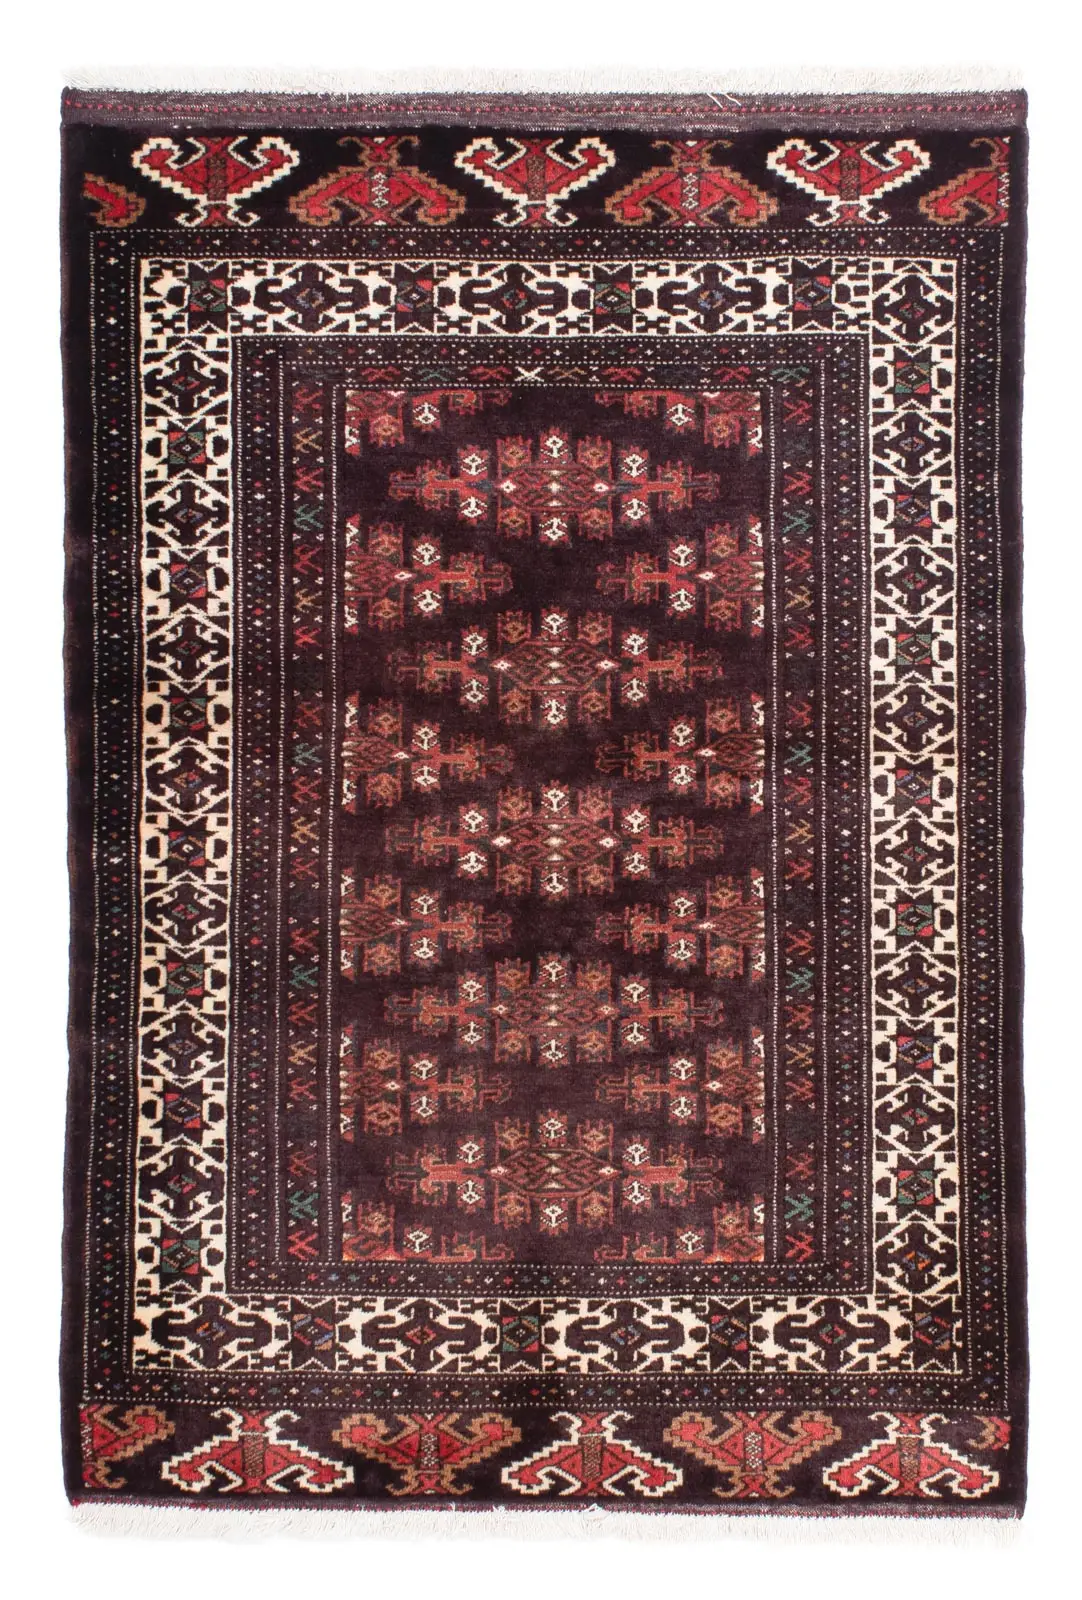 Belutsch Teppich cm 143 x - 103 braun 